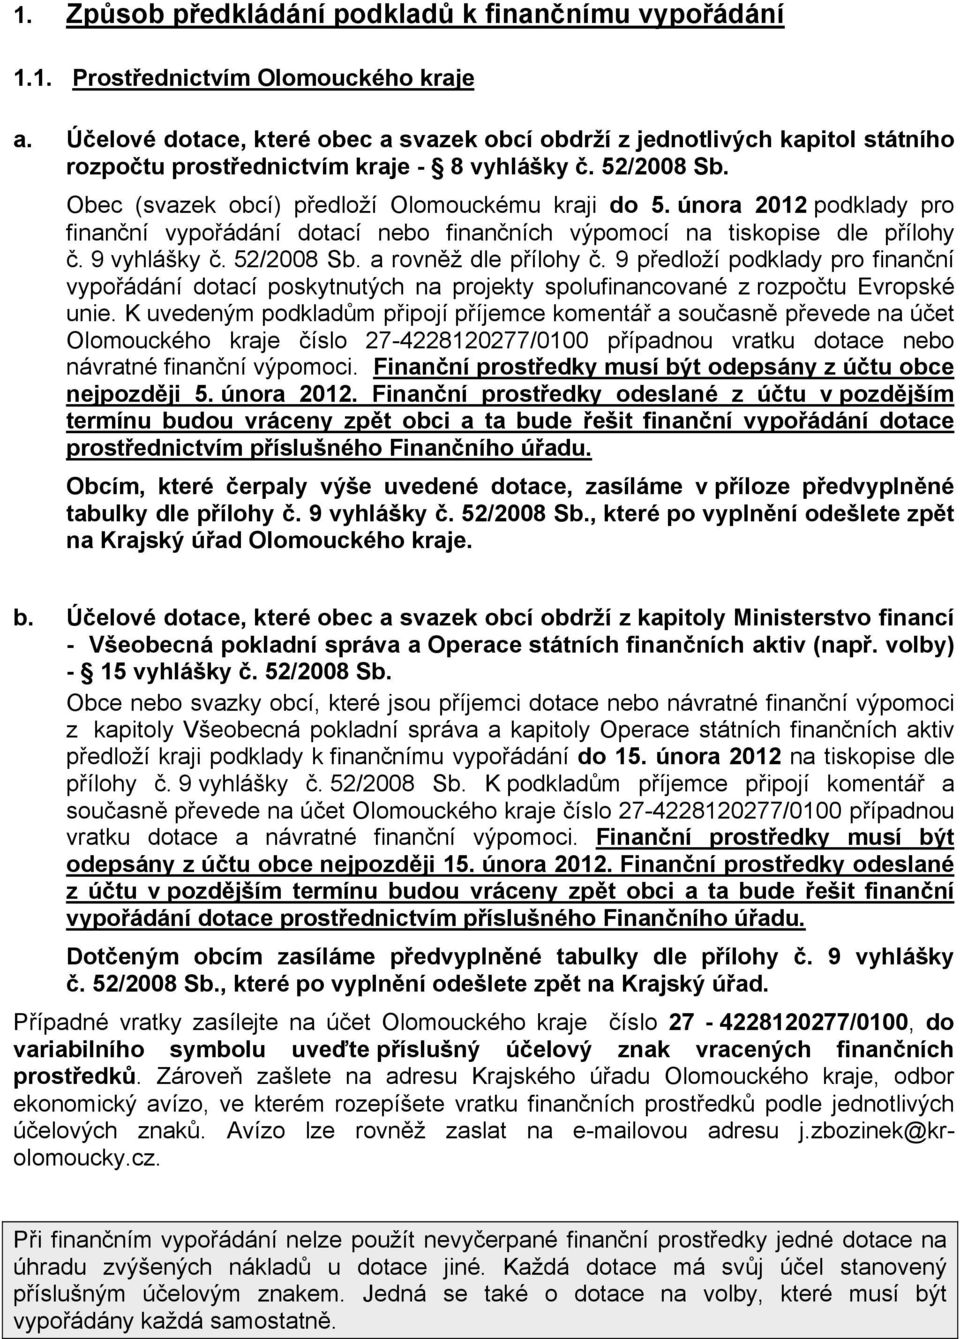 února 2012 podklady pro finanční vypořádání dotací nebo finančních výpomocí na tiskopise dle přílohy č. 9 vyhlášky č. 52/2008 Sb. a rovněž dle přílohy č.